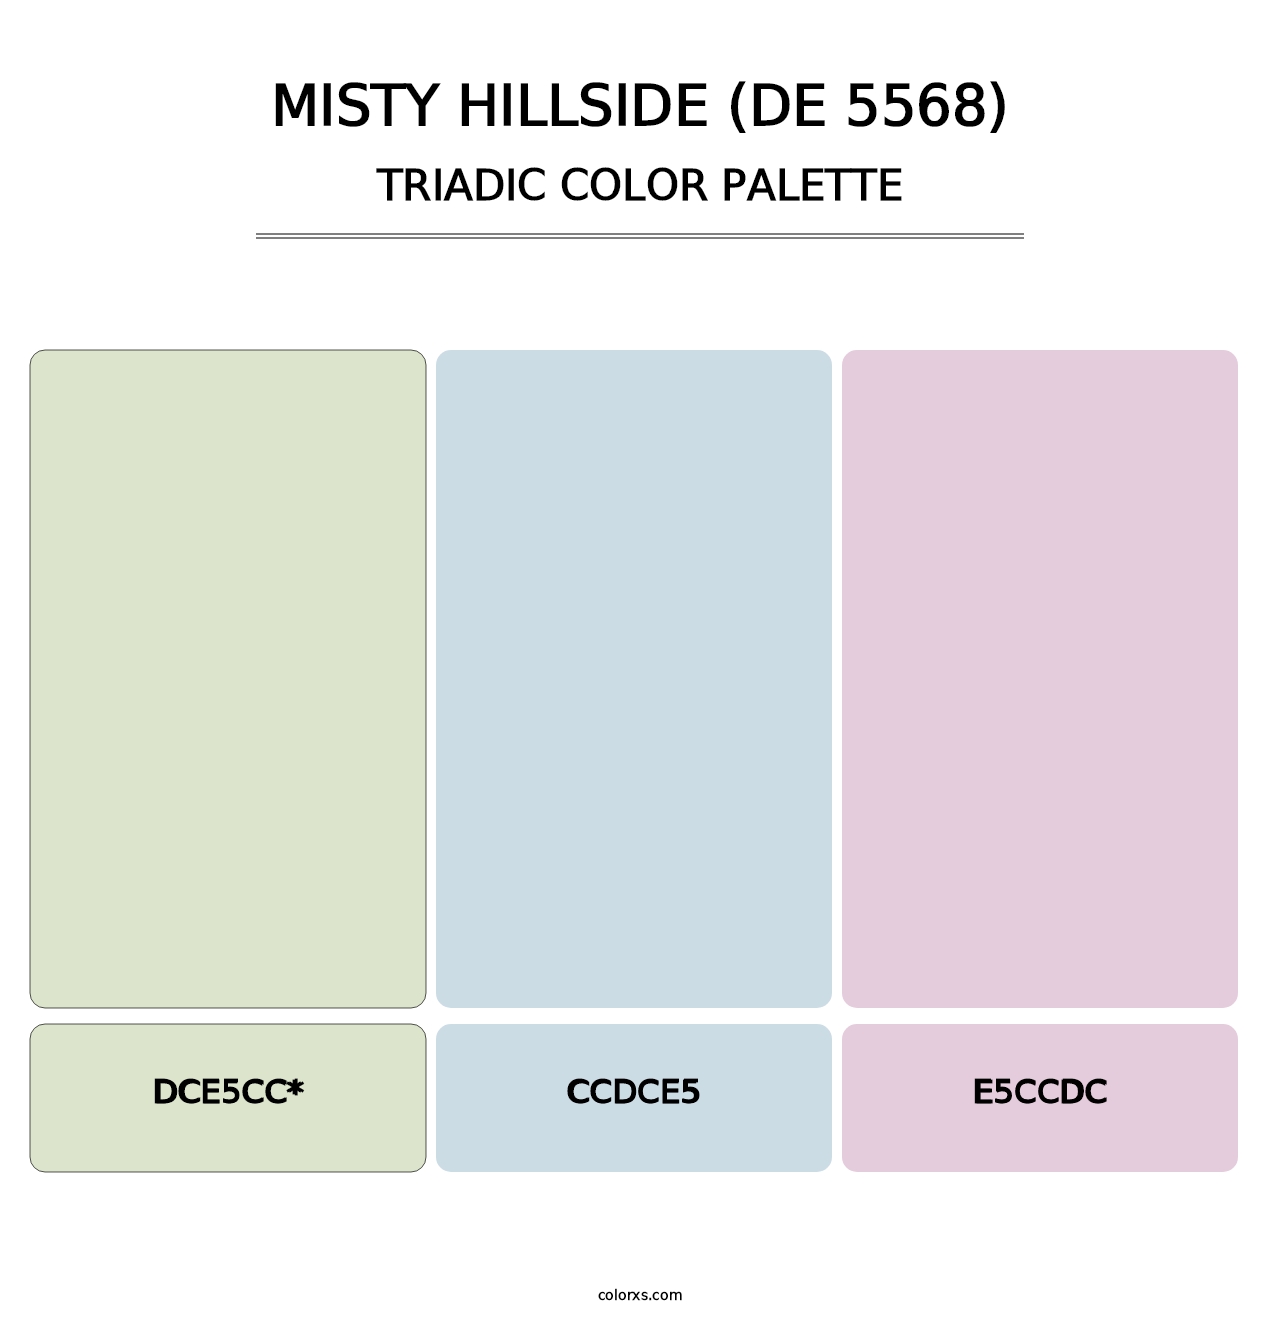 Misty Hillside (DE 5568) - Triadic Color Palette